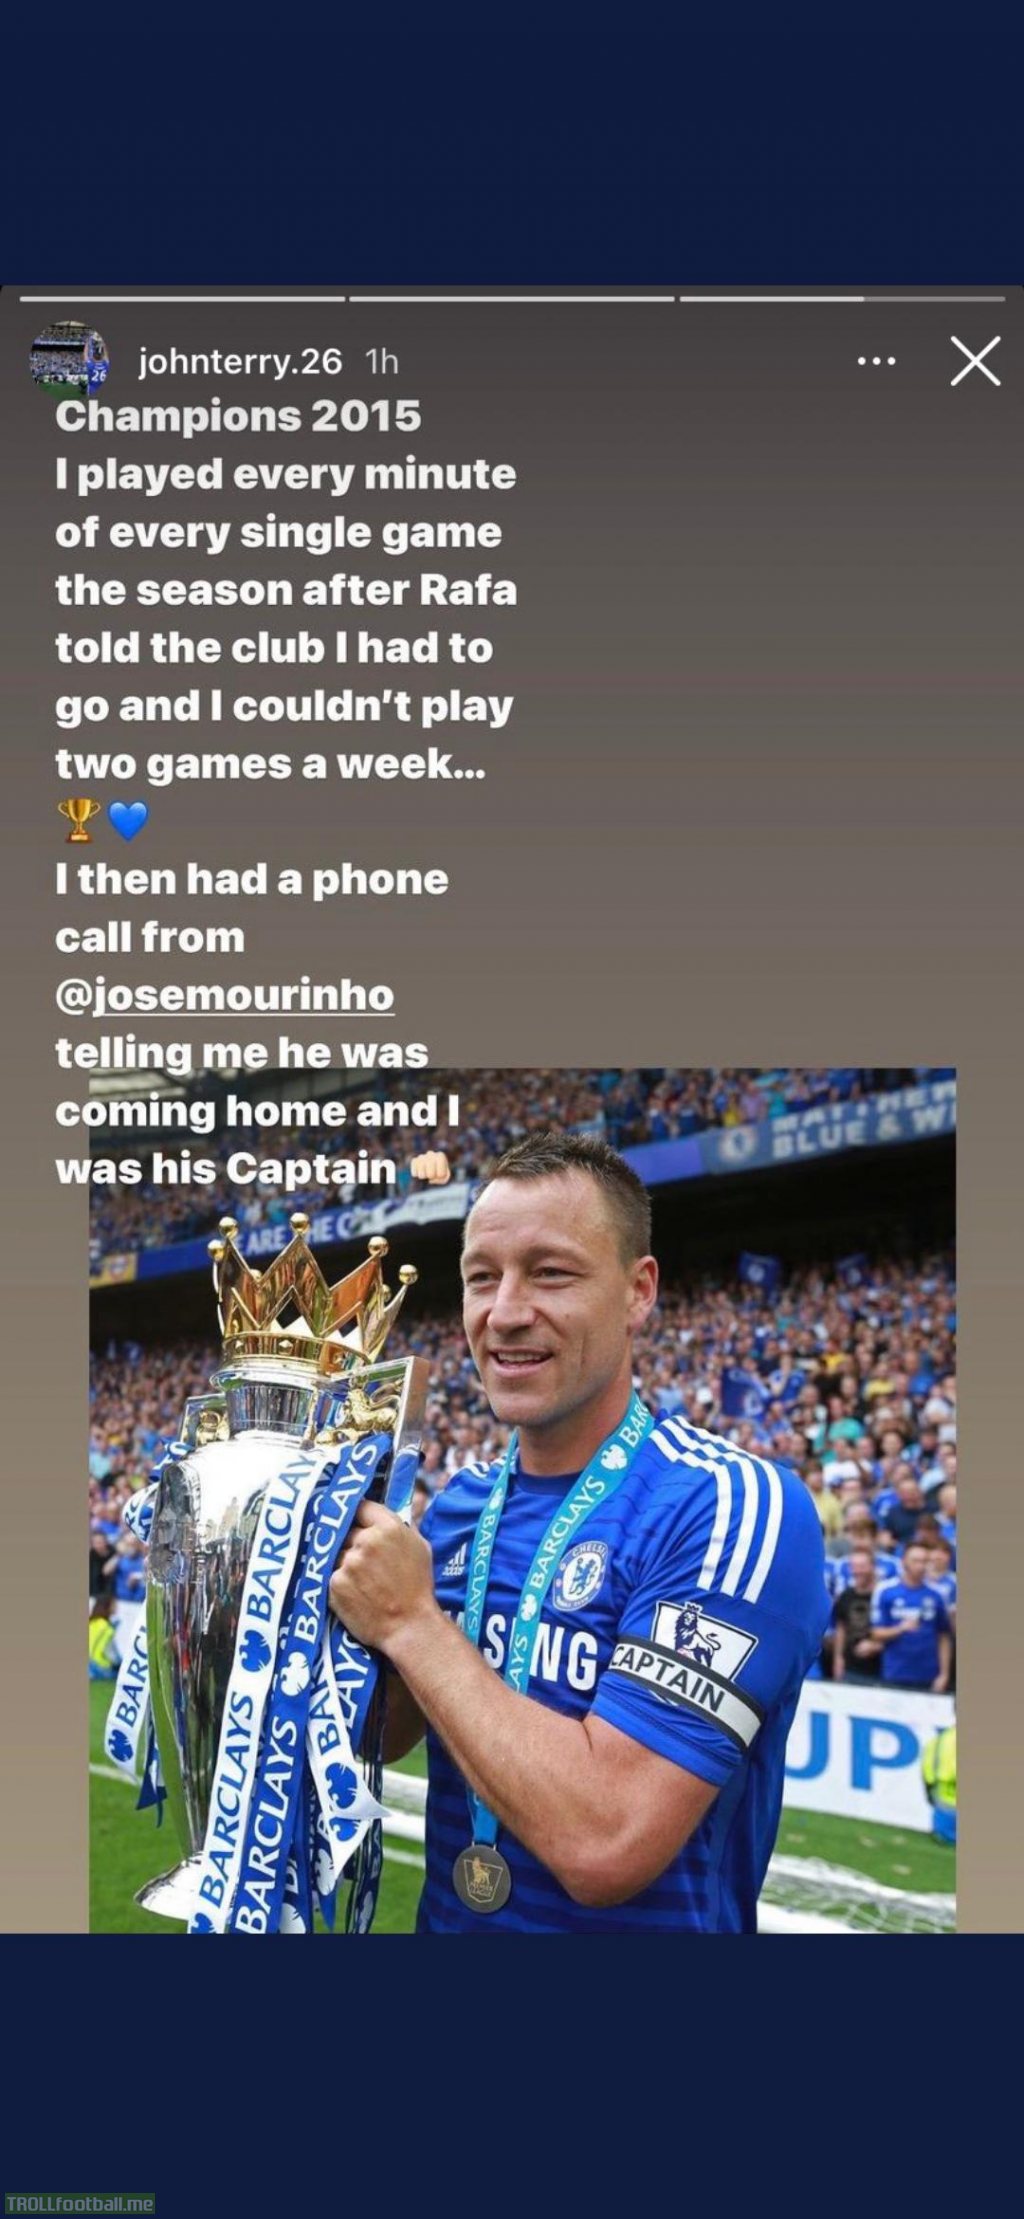 John terry on Instagram about Rafa Benitez.